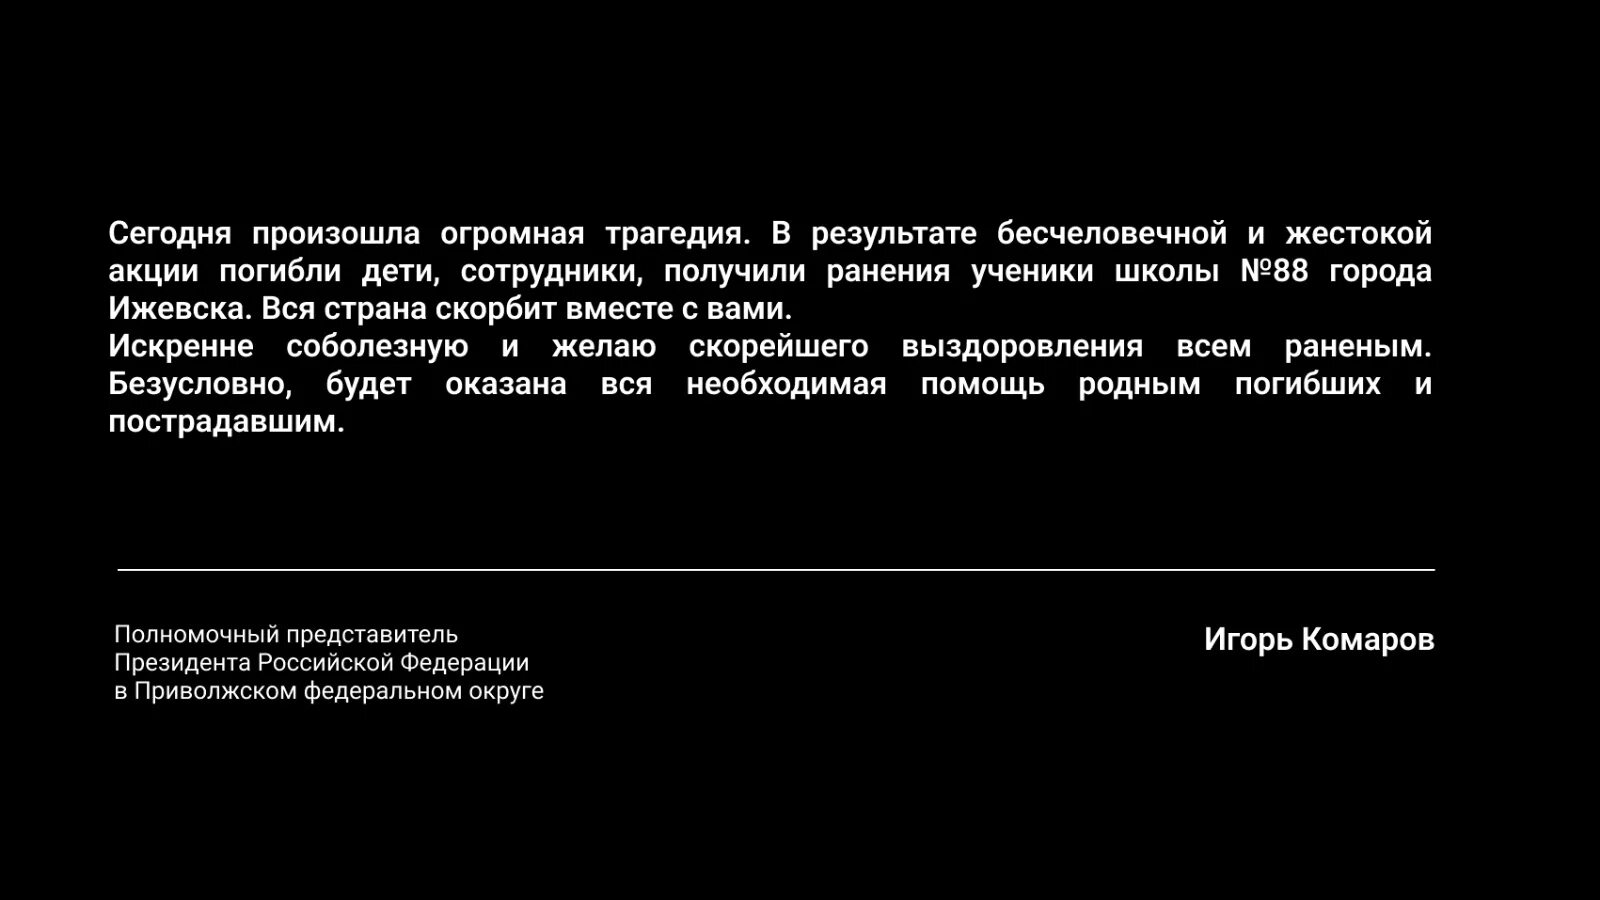 Соболезнования родным. Выразил соболезнования в связи с трагедией в Ижевске.